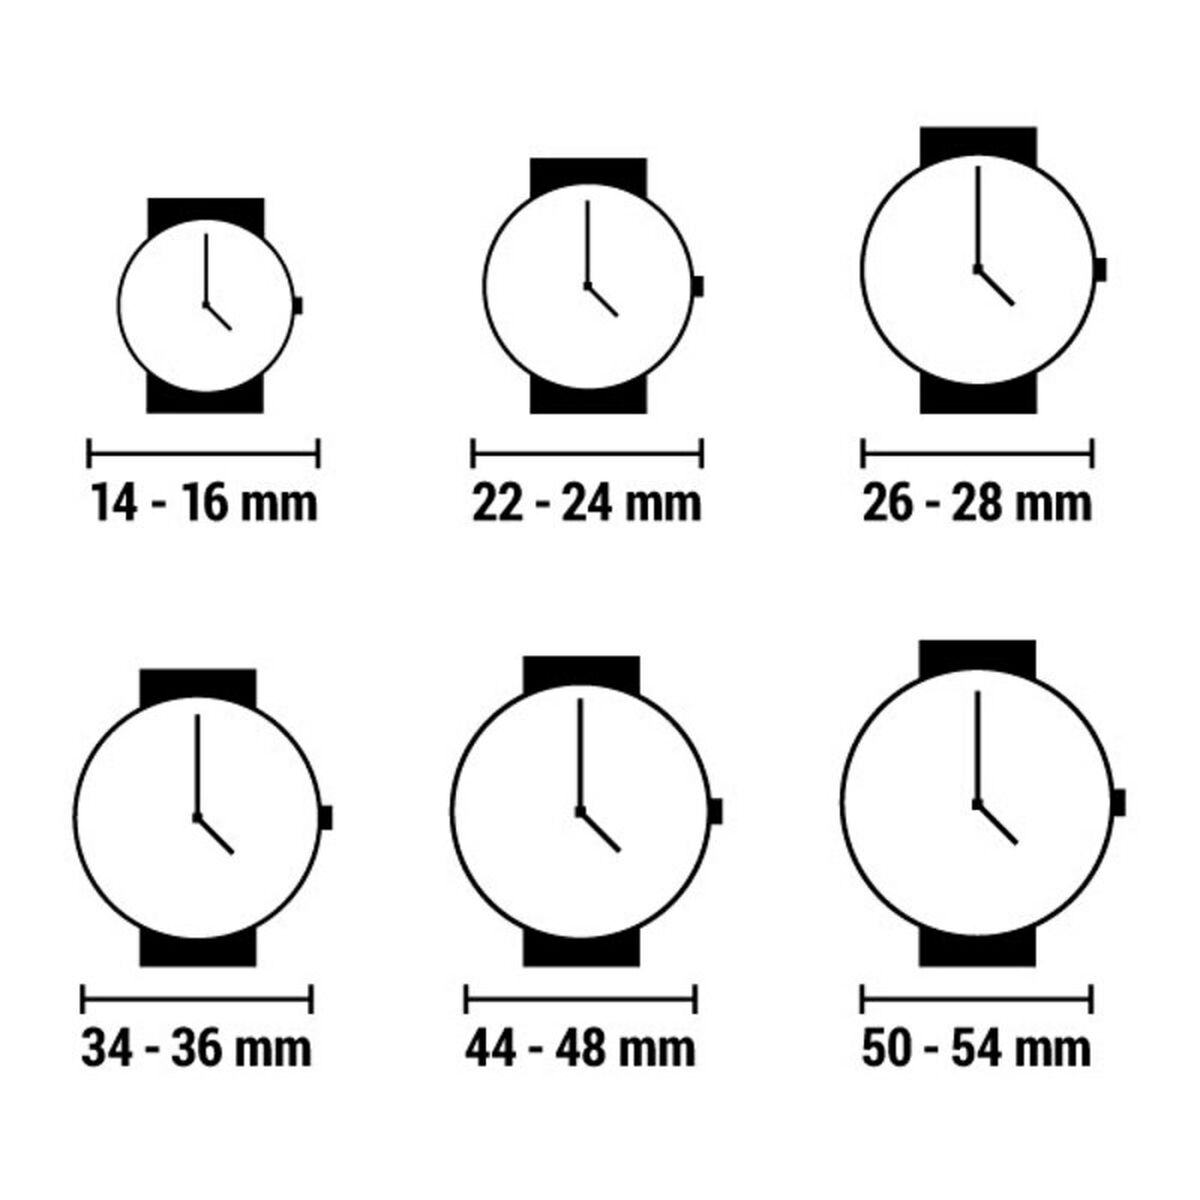 Horloge Heren Jason Hyde JH10009 (Ø 40 mm)